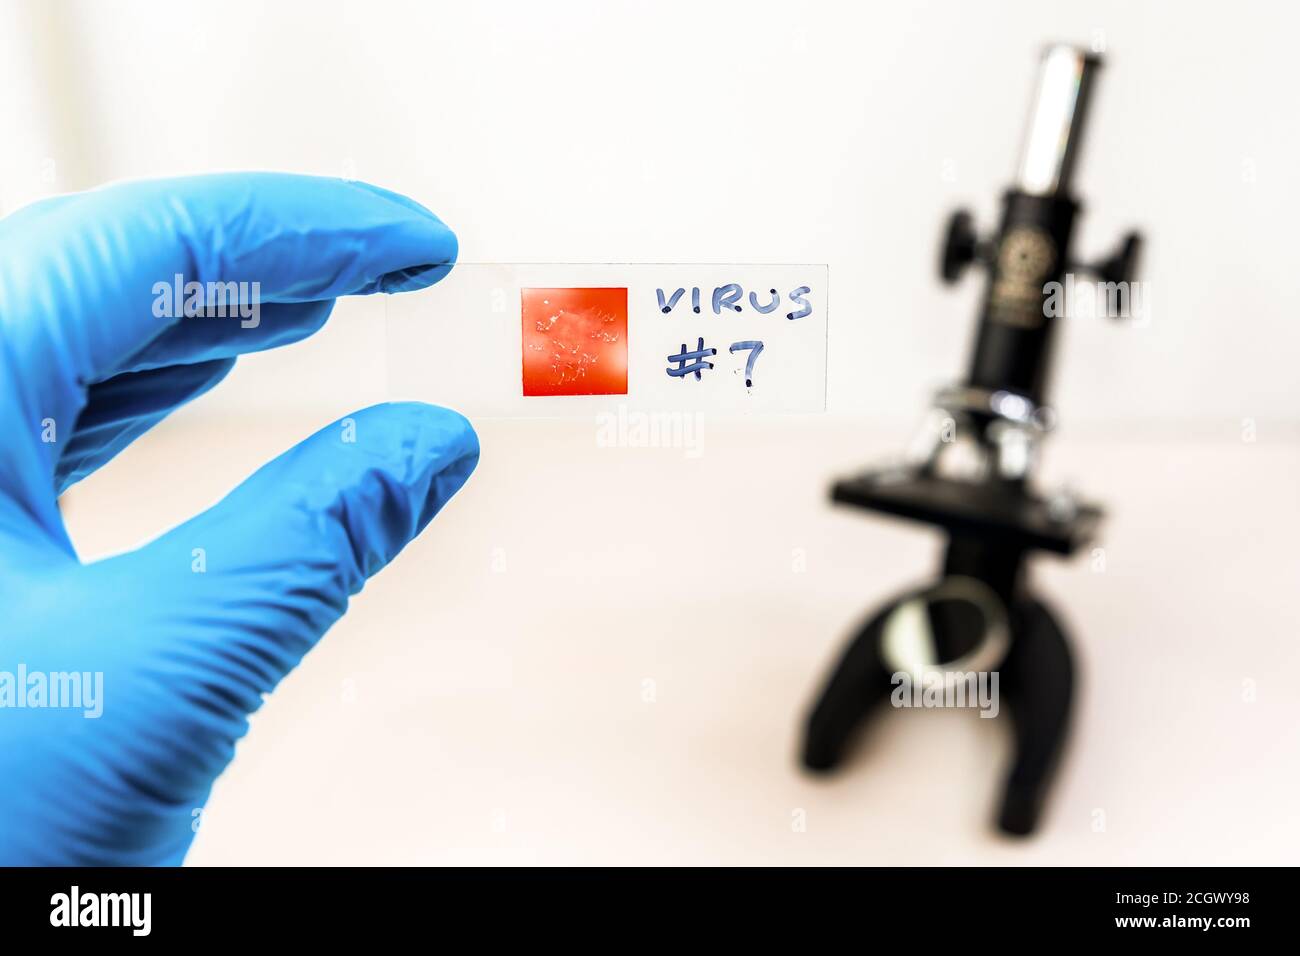 Eine Hand trägt einen blauen Handschuh hält ein Mikroskop-Dia mit VIRUS #7 in Marker darauf geschrieben. Deckglas ist rot. Mikroskop im Hintergrund. Stockfoto